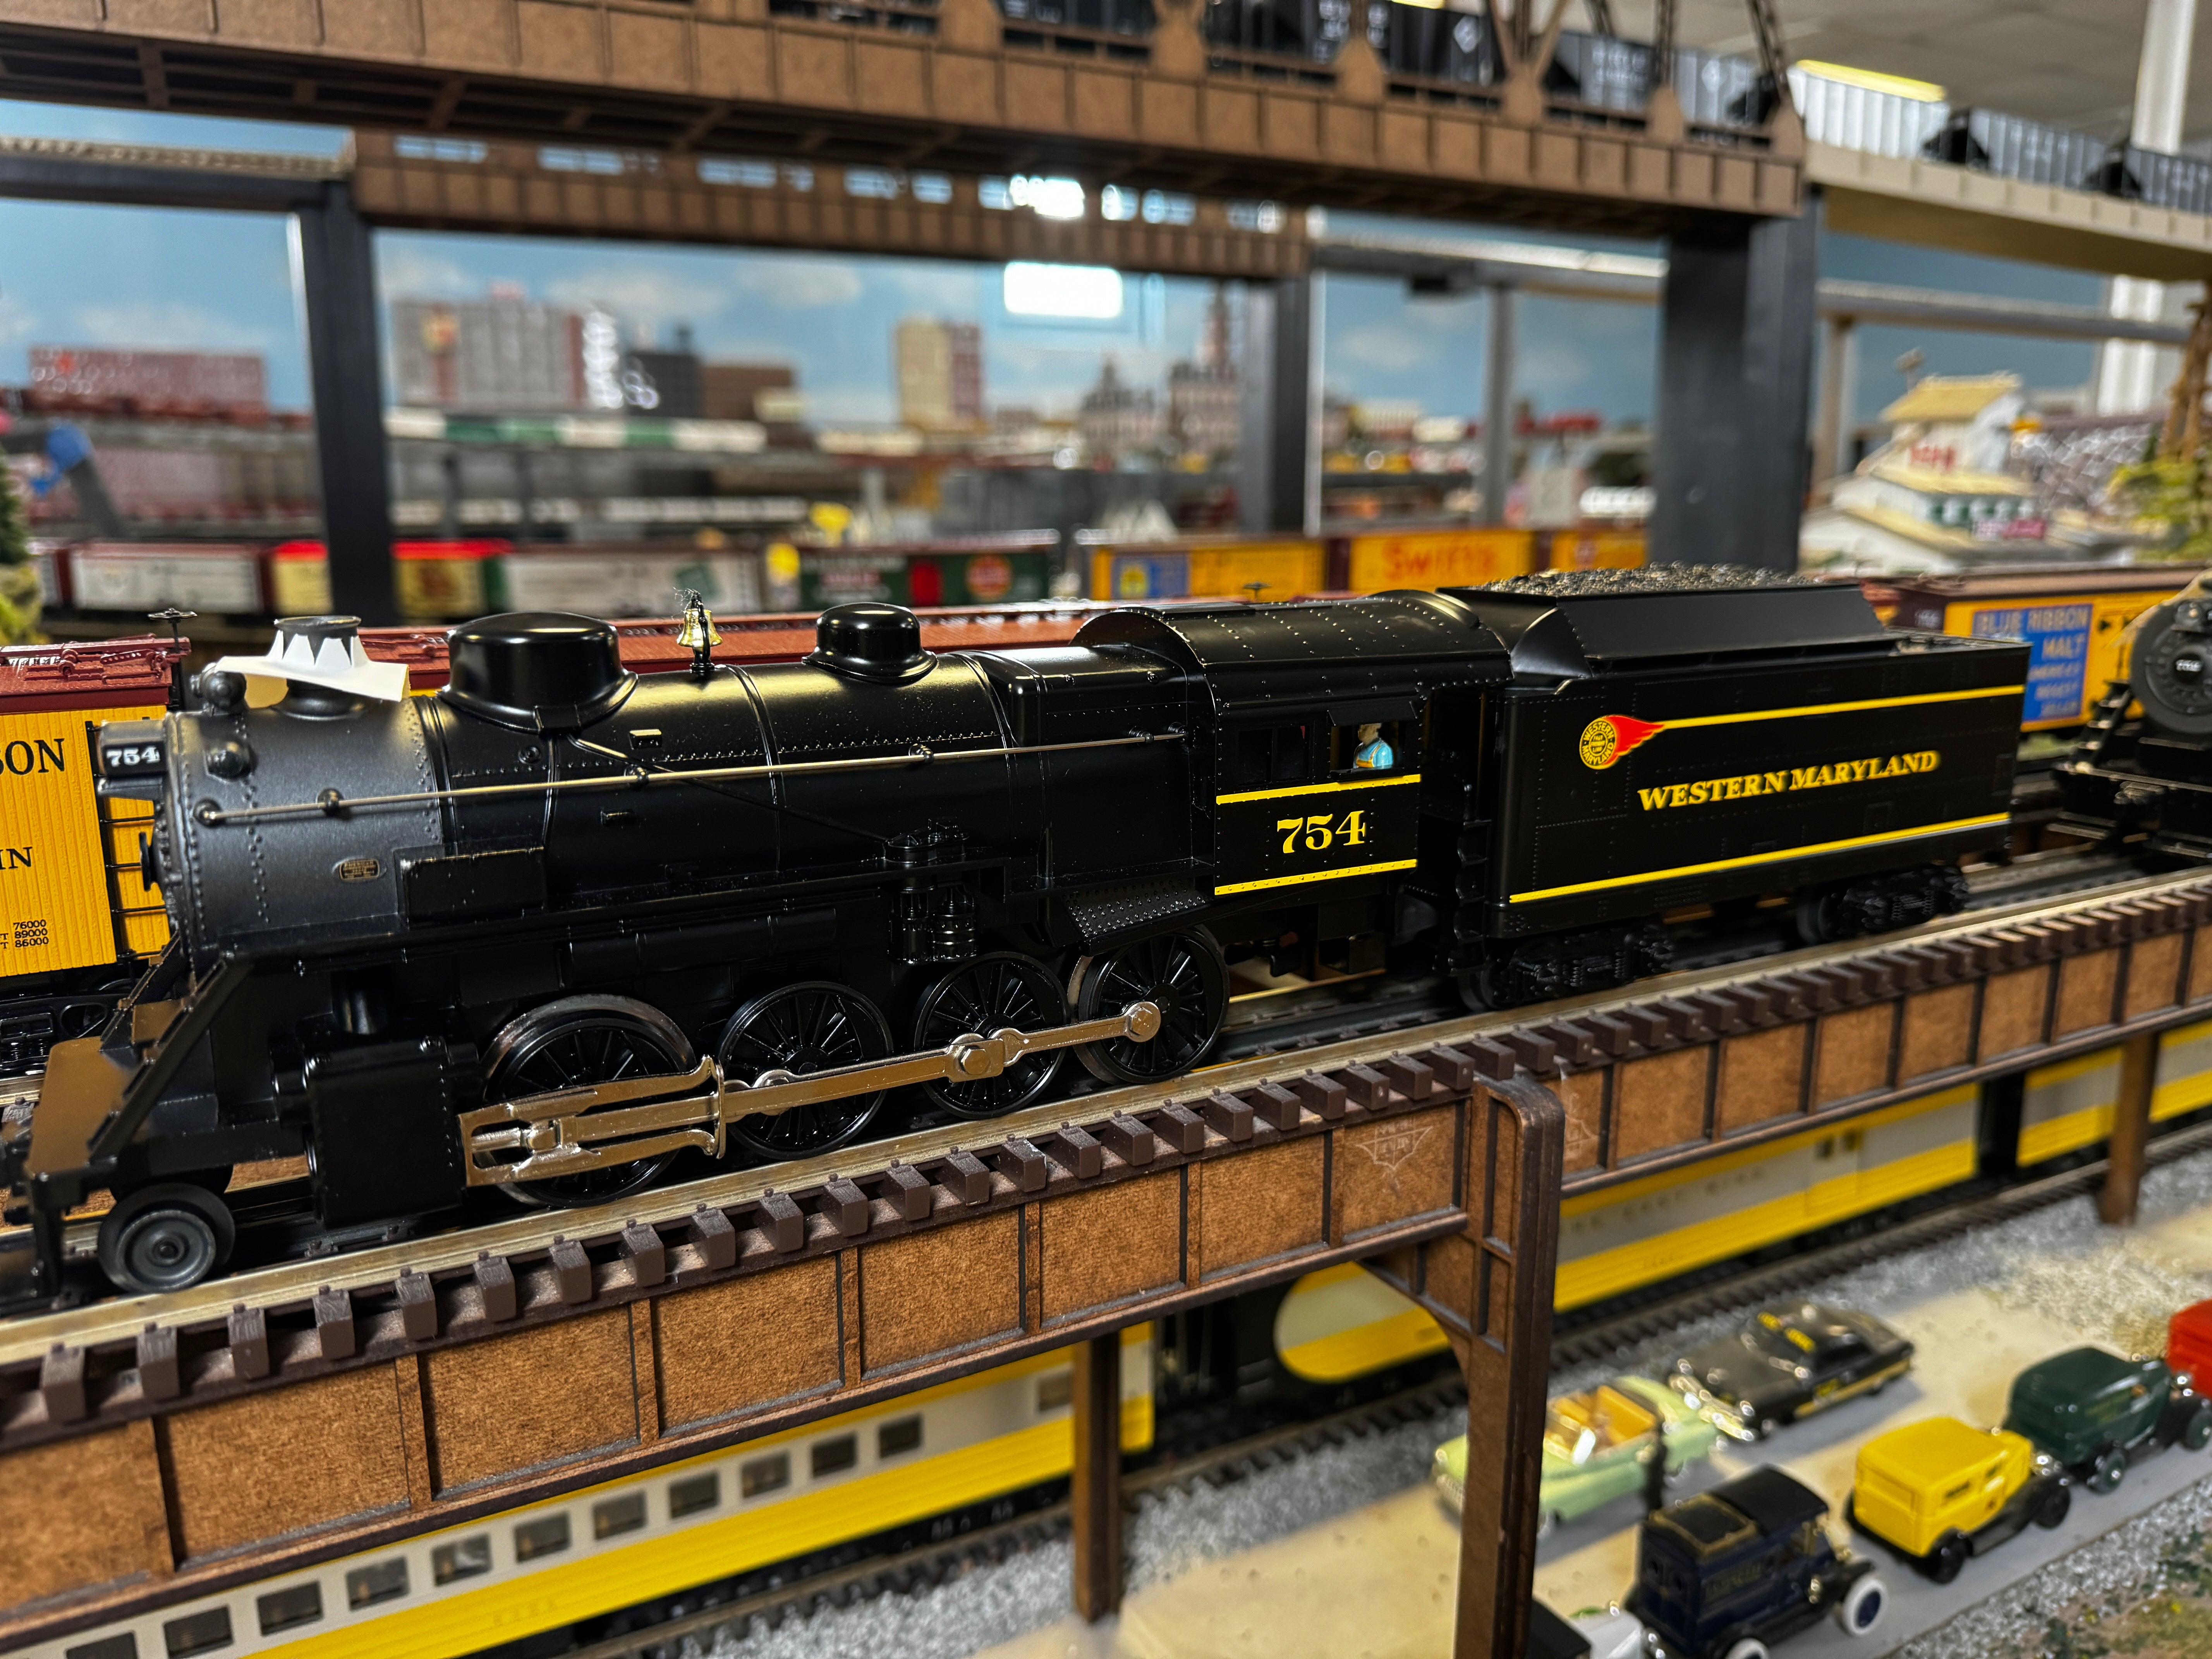 Lionel 2332110 - LionChief 2-8-0 Steam Locomotive "Western Maryland" #754